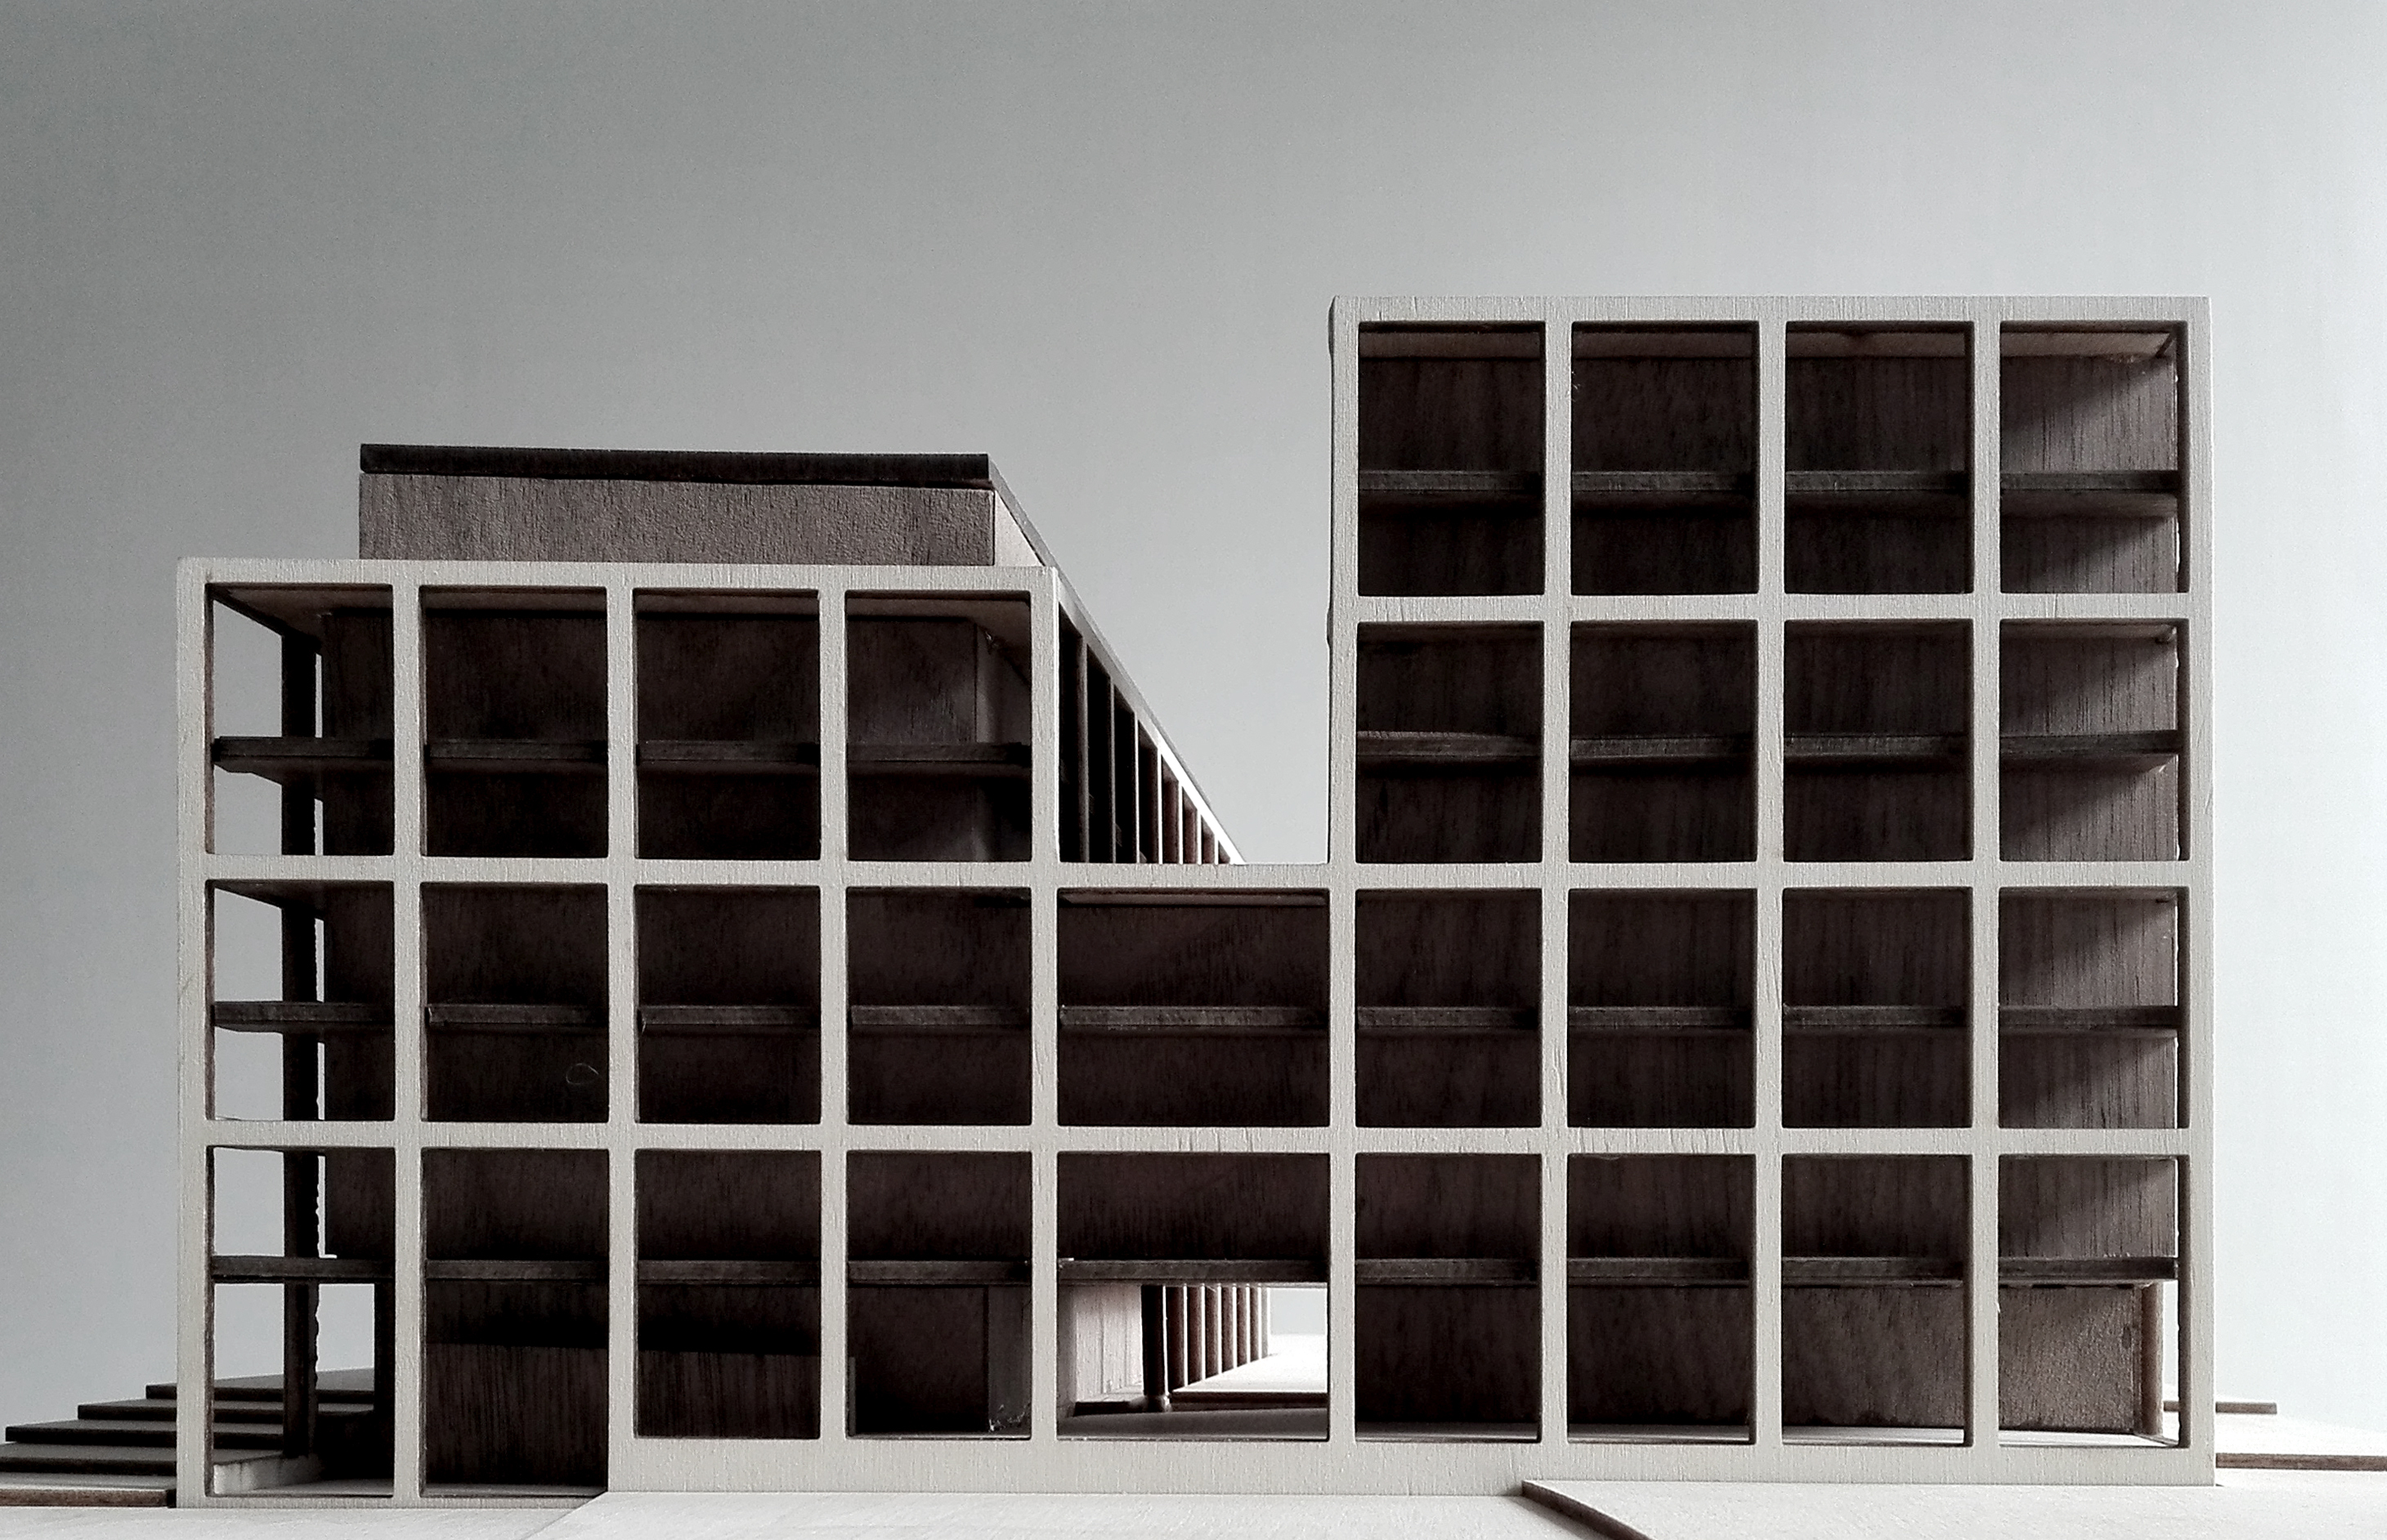 Schelde 21 By Vincent Van Duysen Architects Antwerp Belgium  O